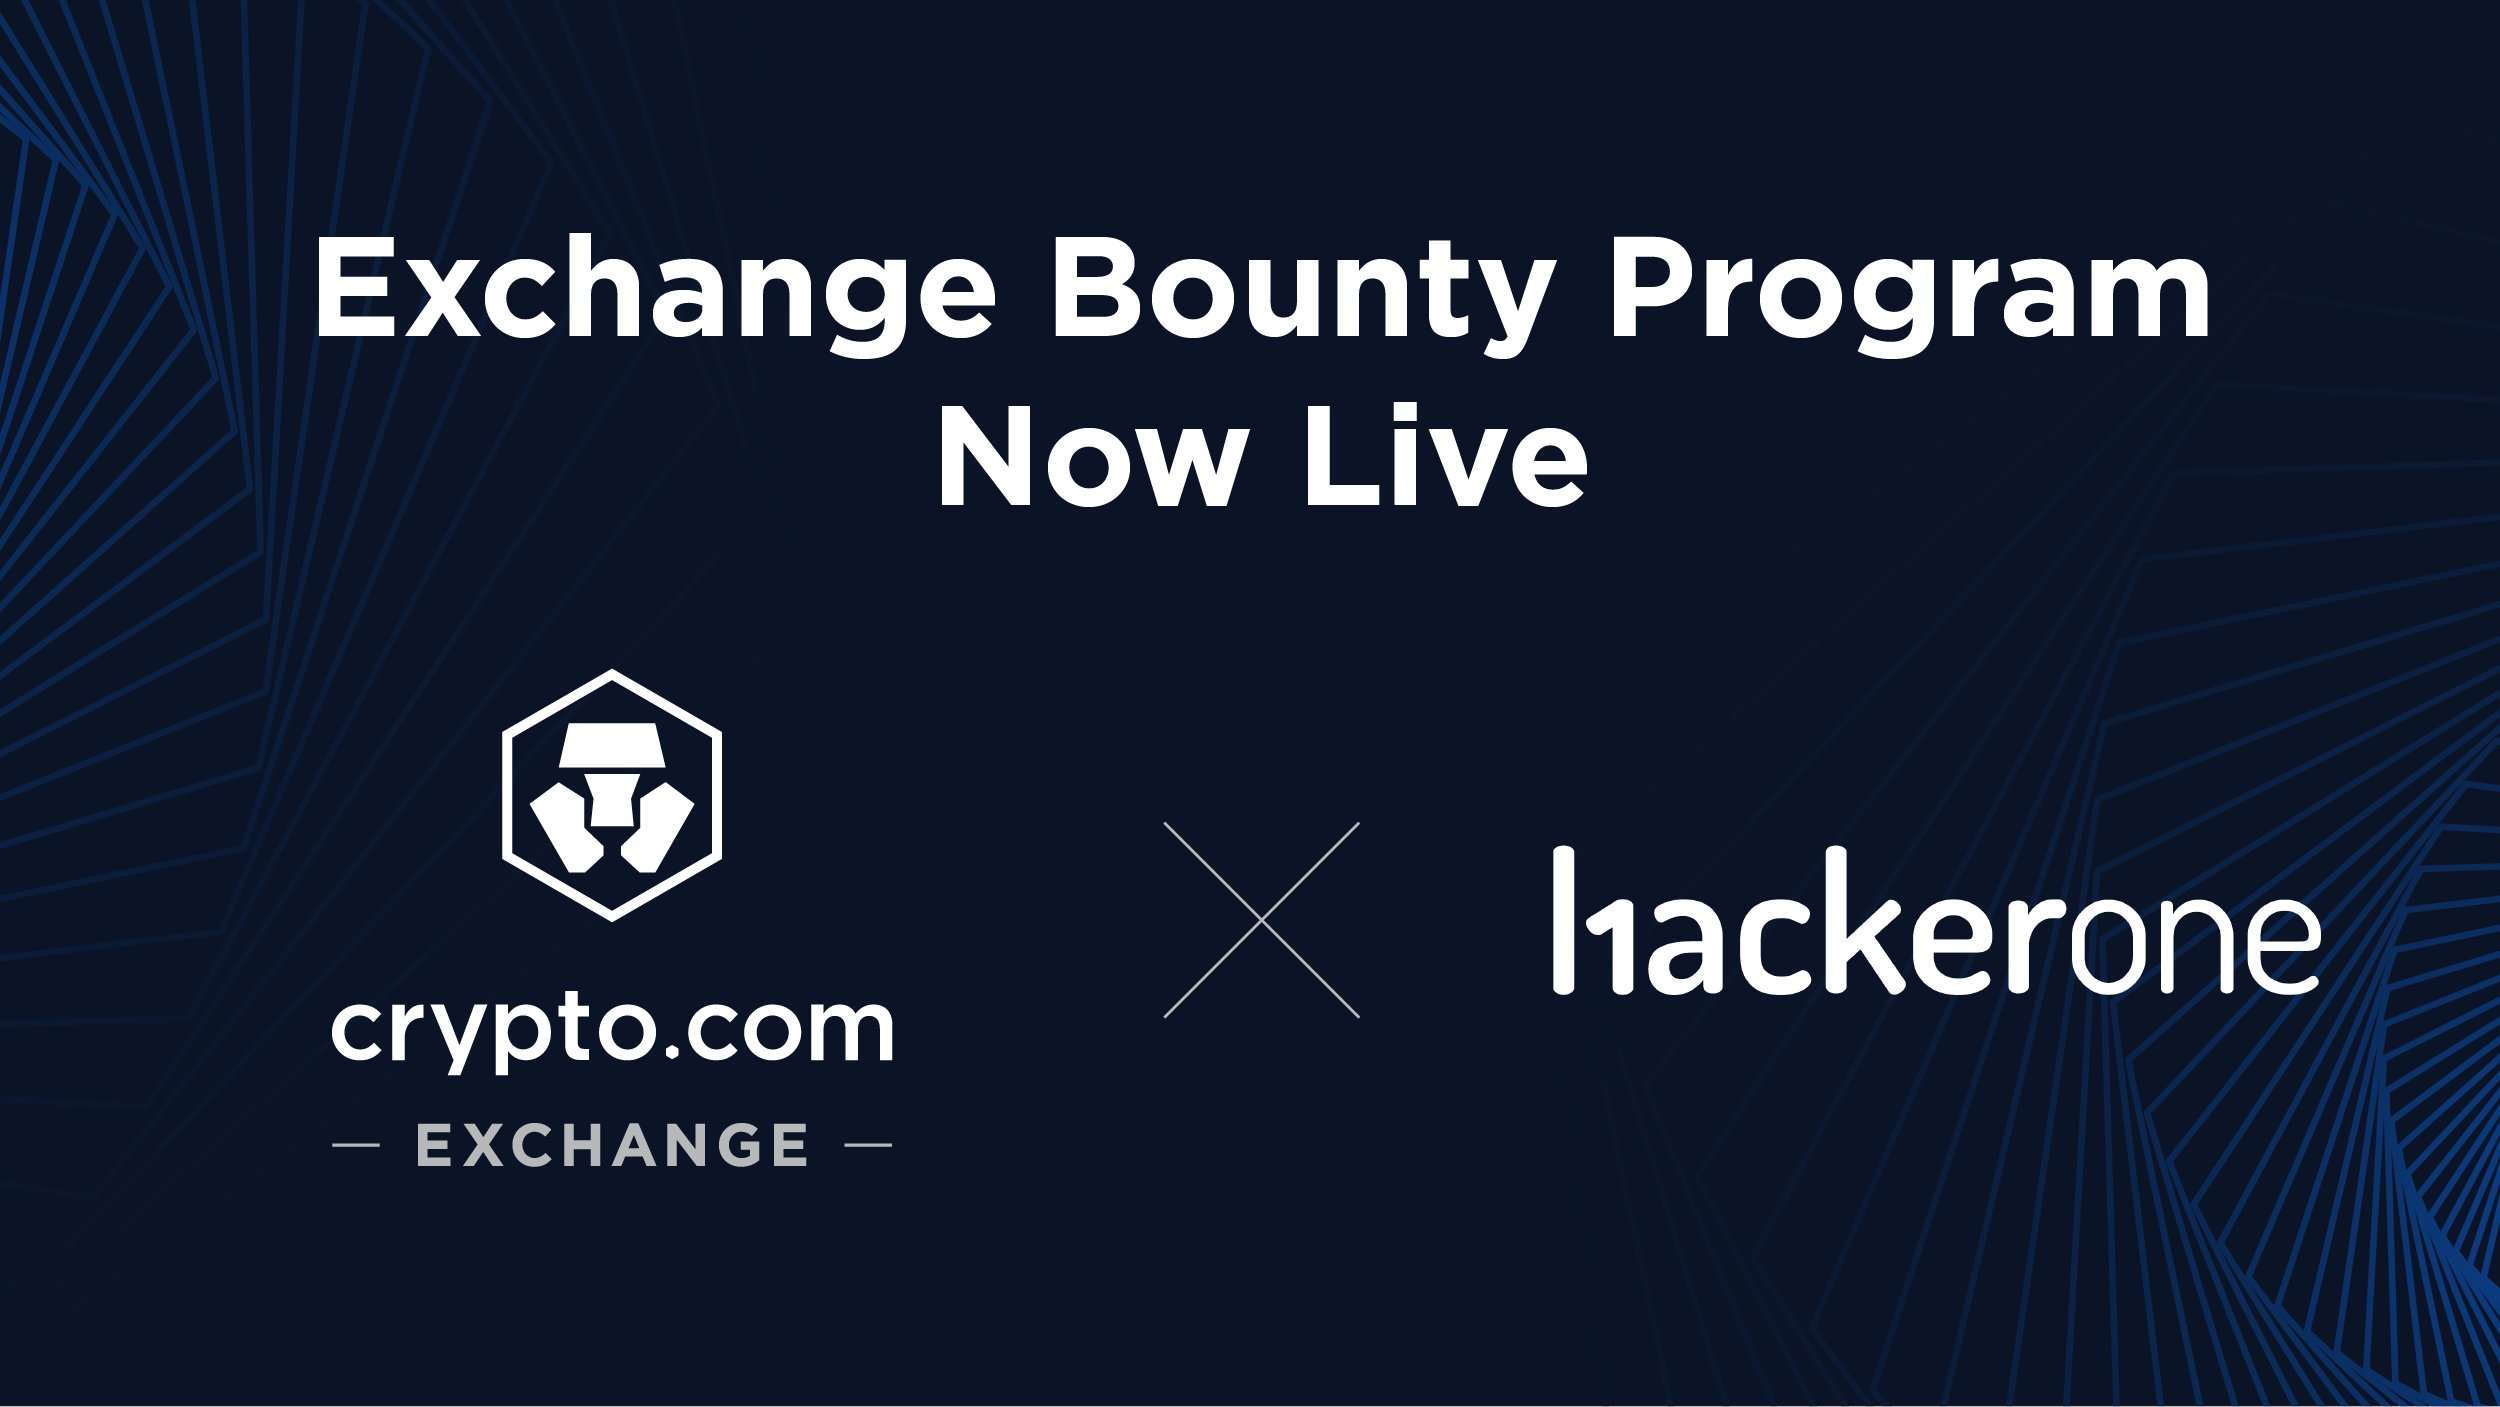 Crypto.com Bounty Program